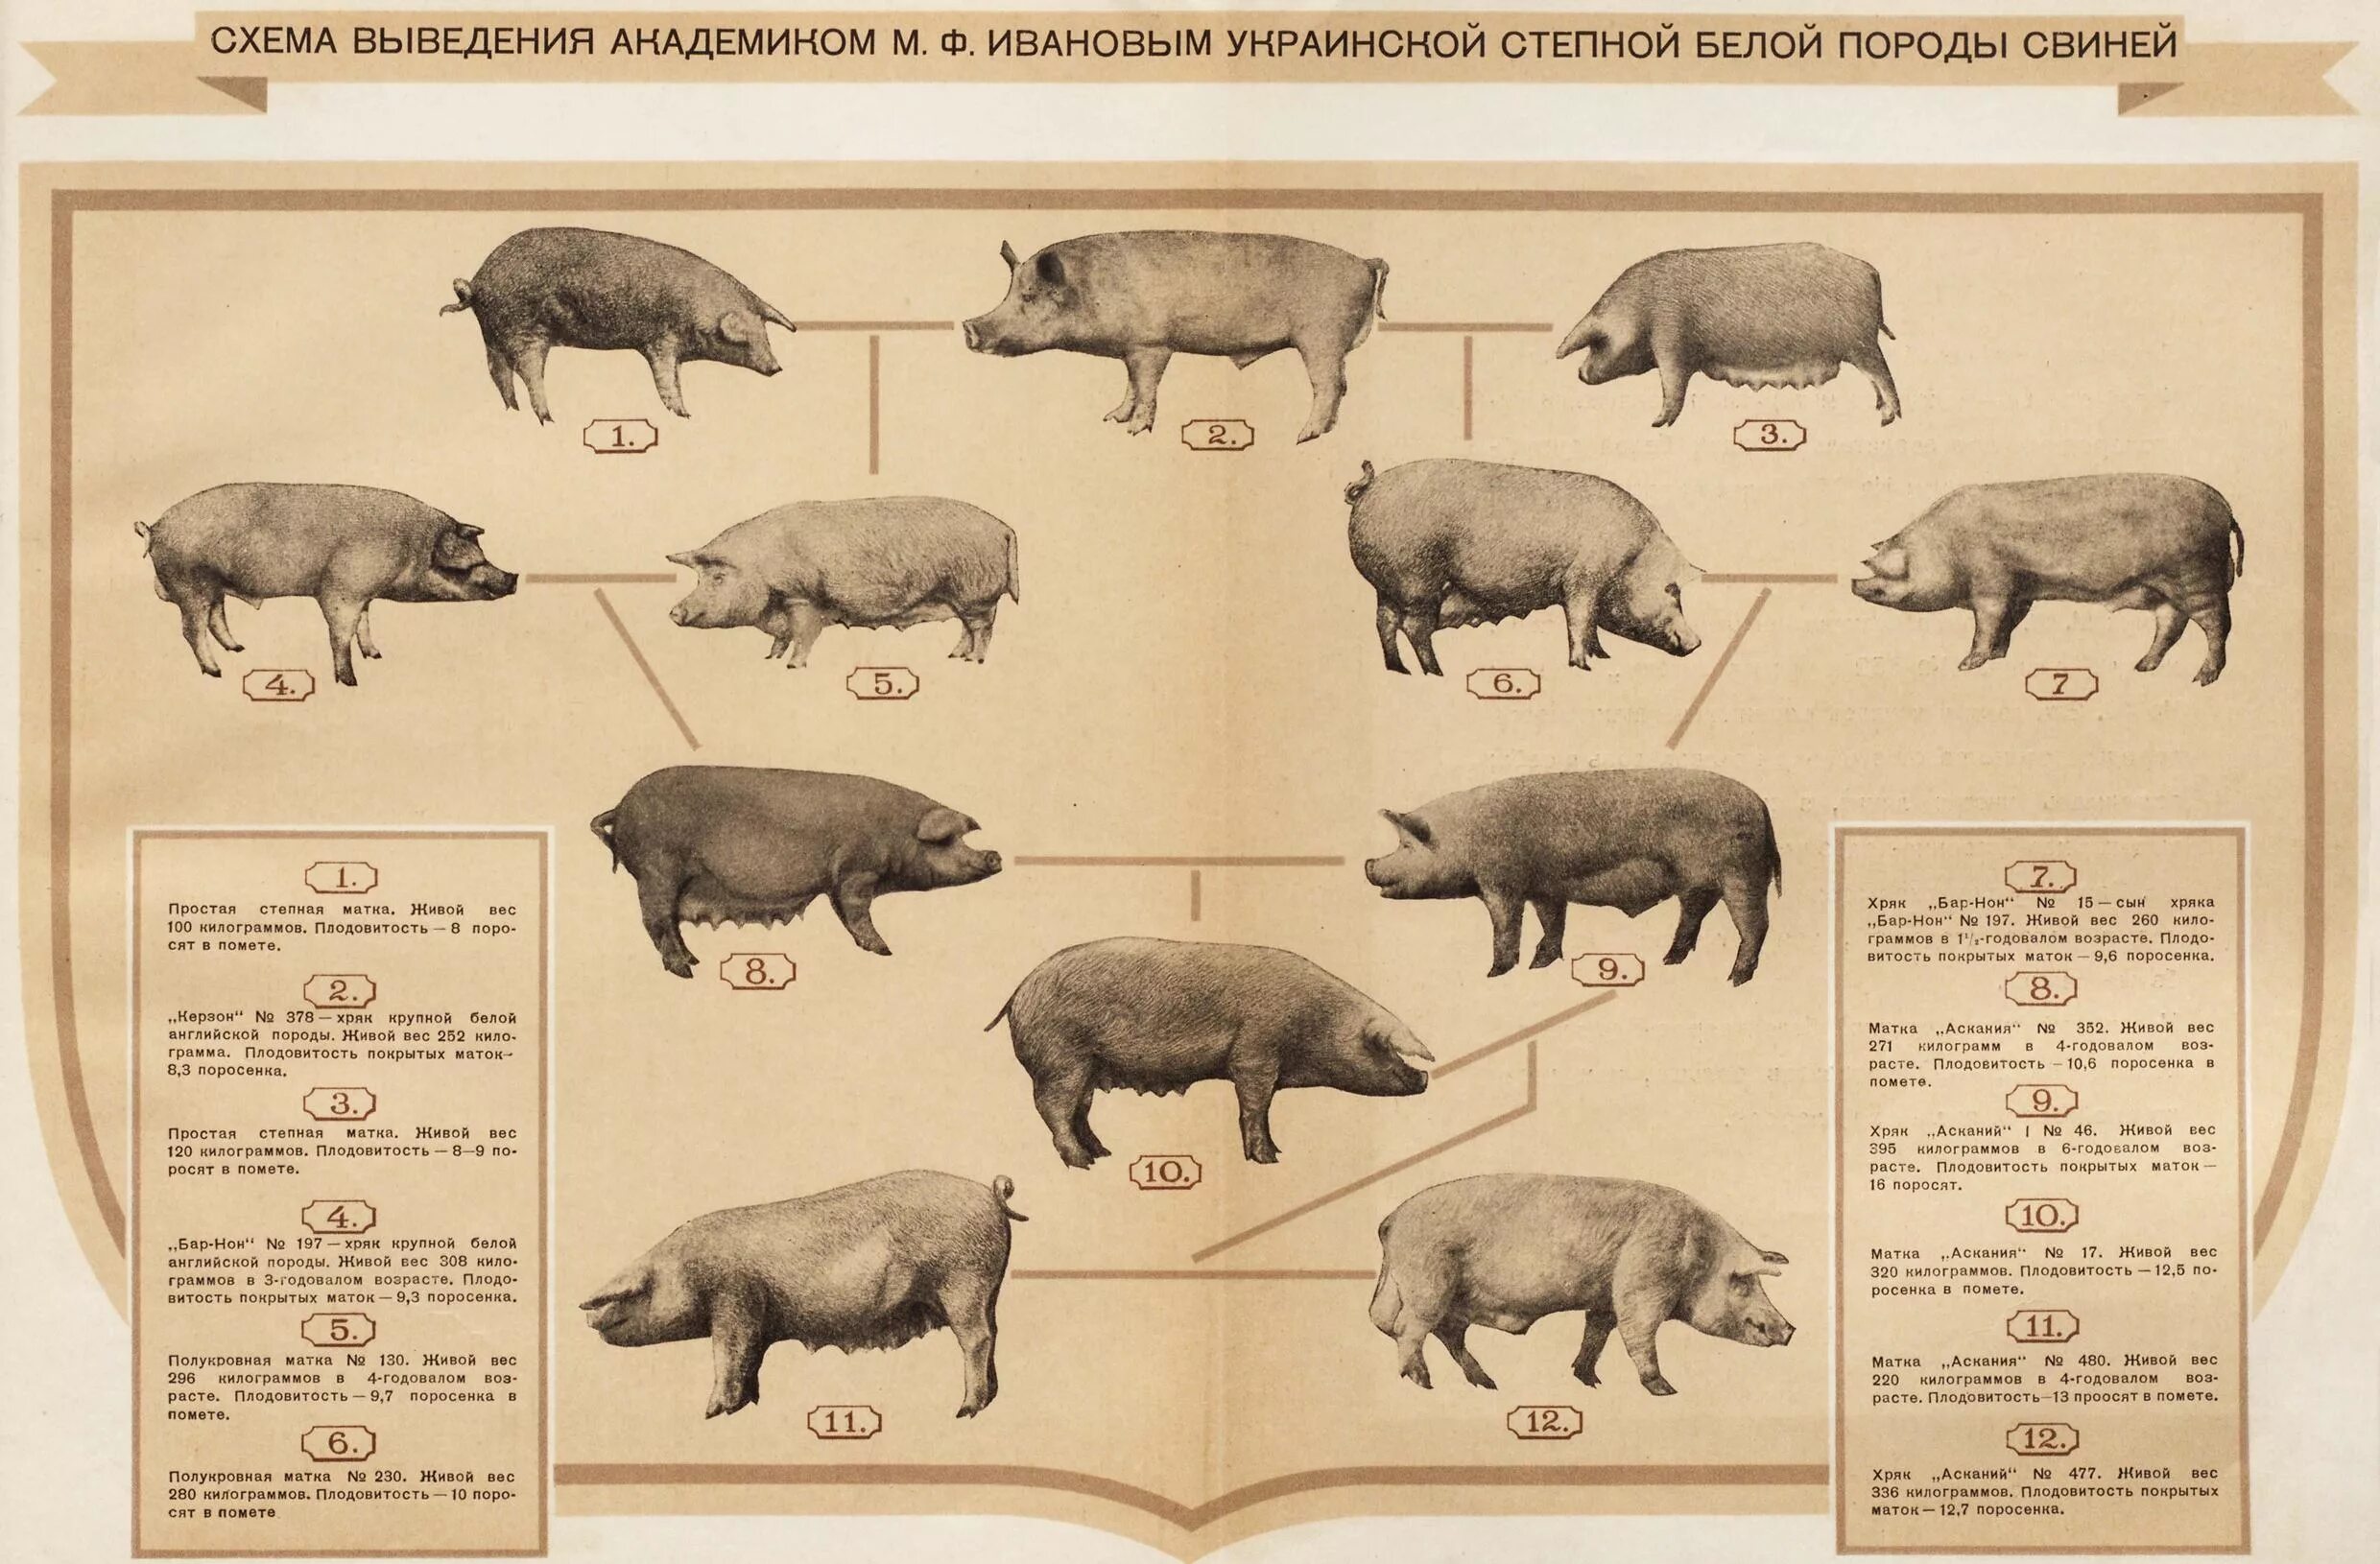 Схема выведения украинской Степной белой породы свиней. Украинская Степная белая порода свиней. Выведение украинской Степной белой породы свиней. Схема пород свиней. Степная свинья